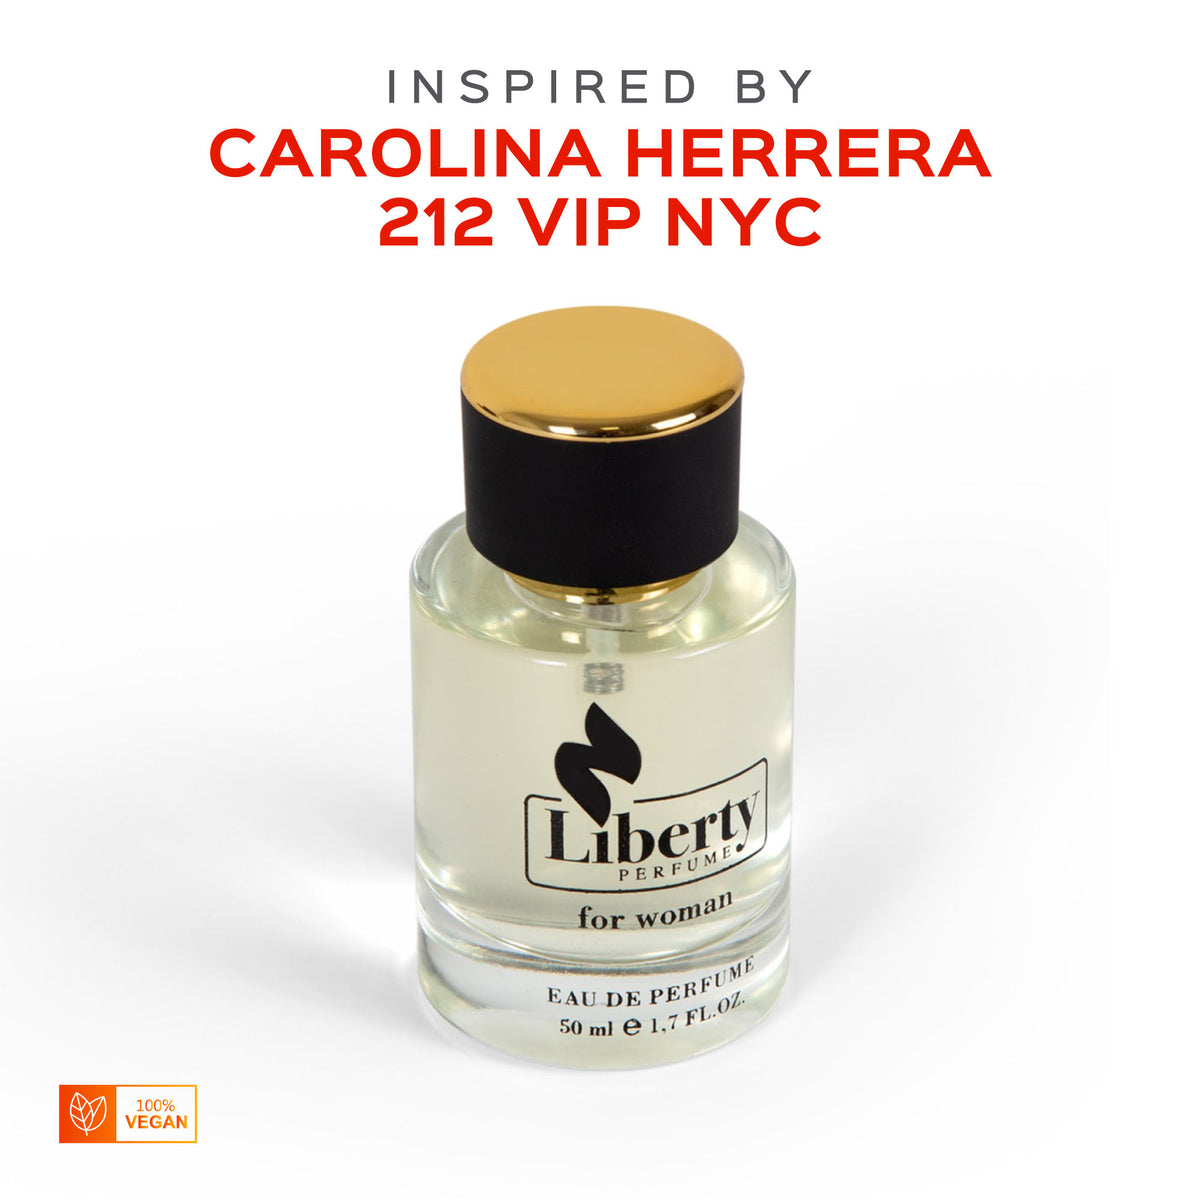 by - for Vip Herrera Perfume Inspired 212 Carolina Women $39.99 Liberty W18 –